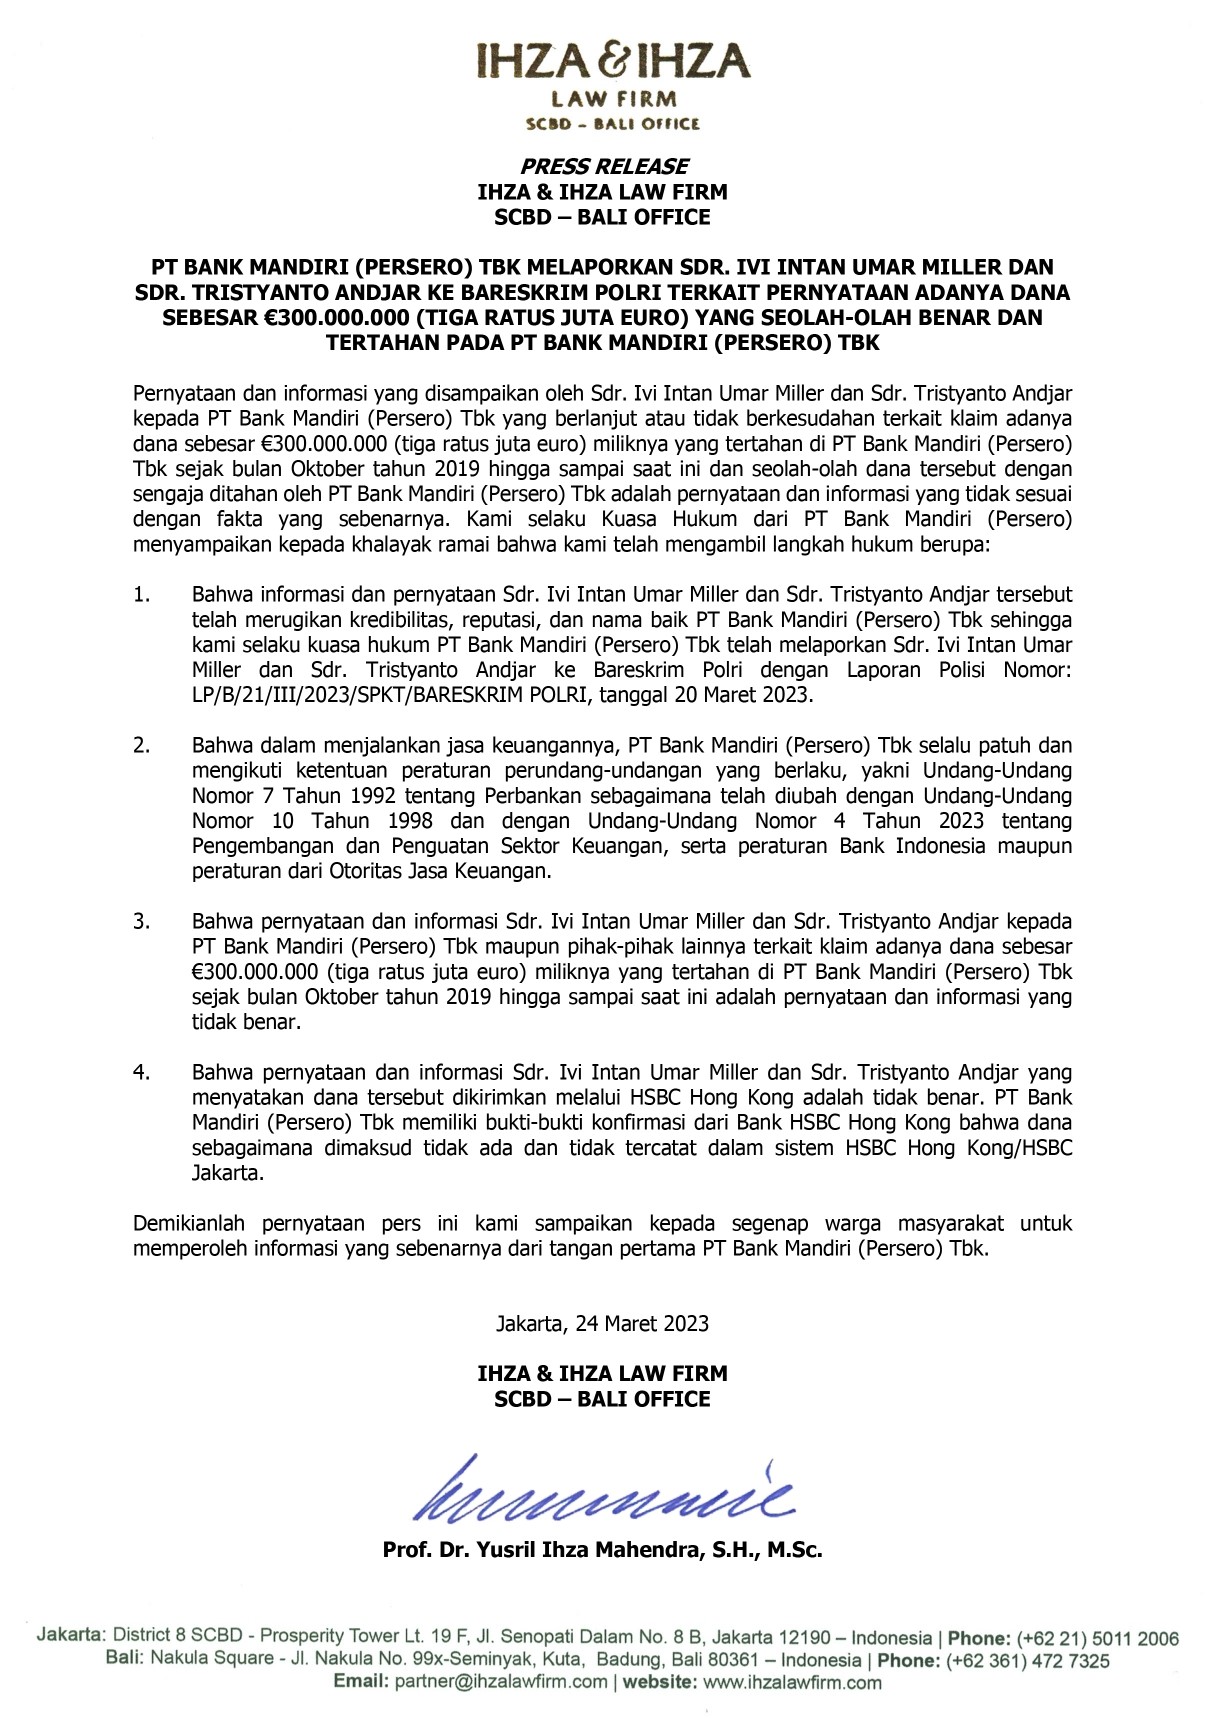 foto: Press Release kasus Bank Mandiri terhadap Ivi Intan Umar Miller dan Tristyanto